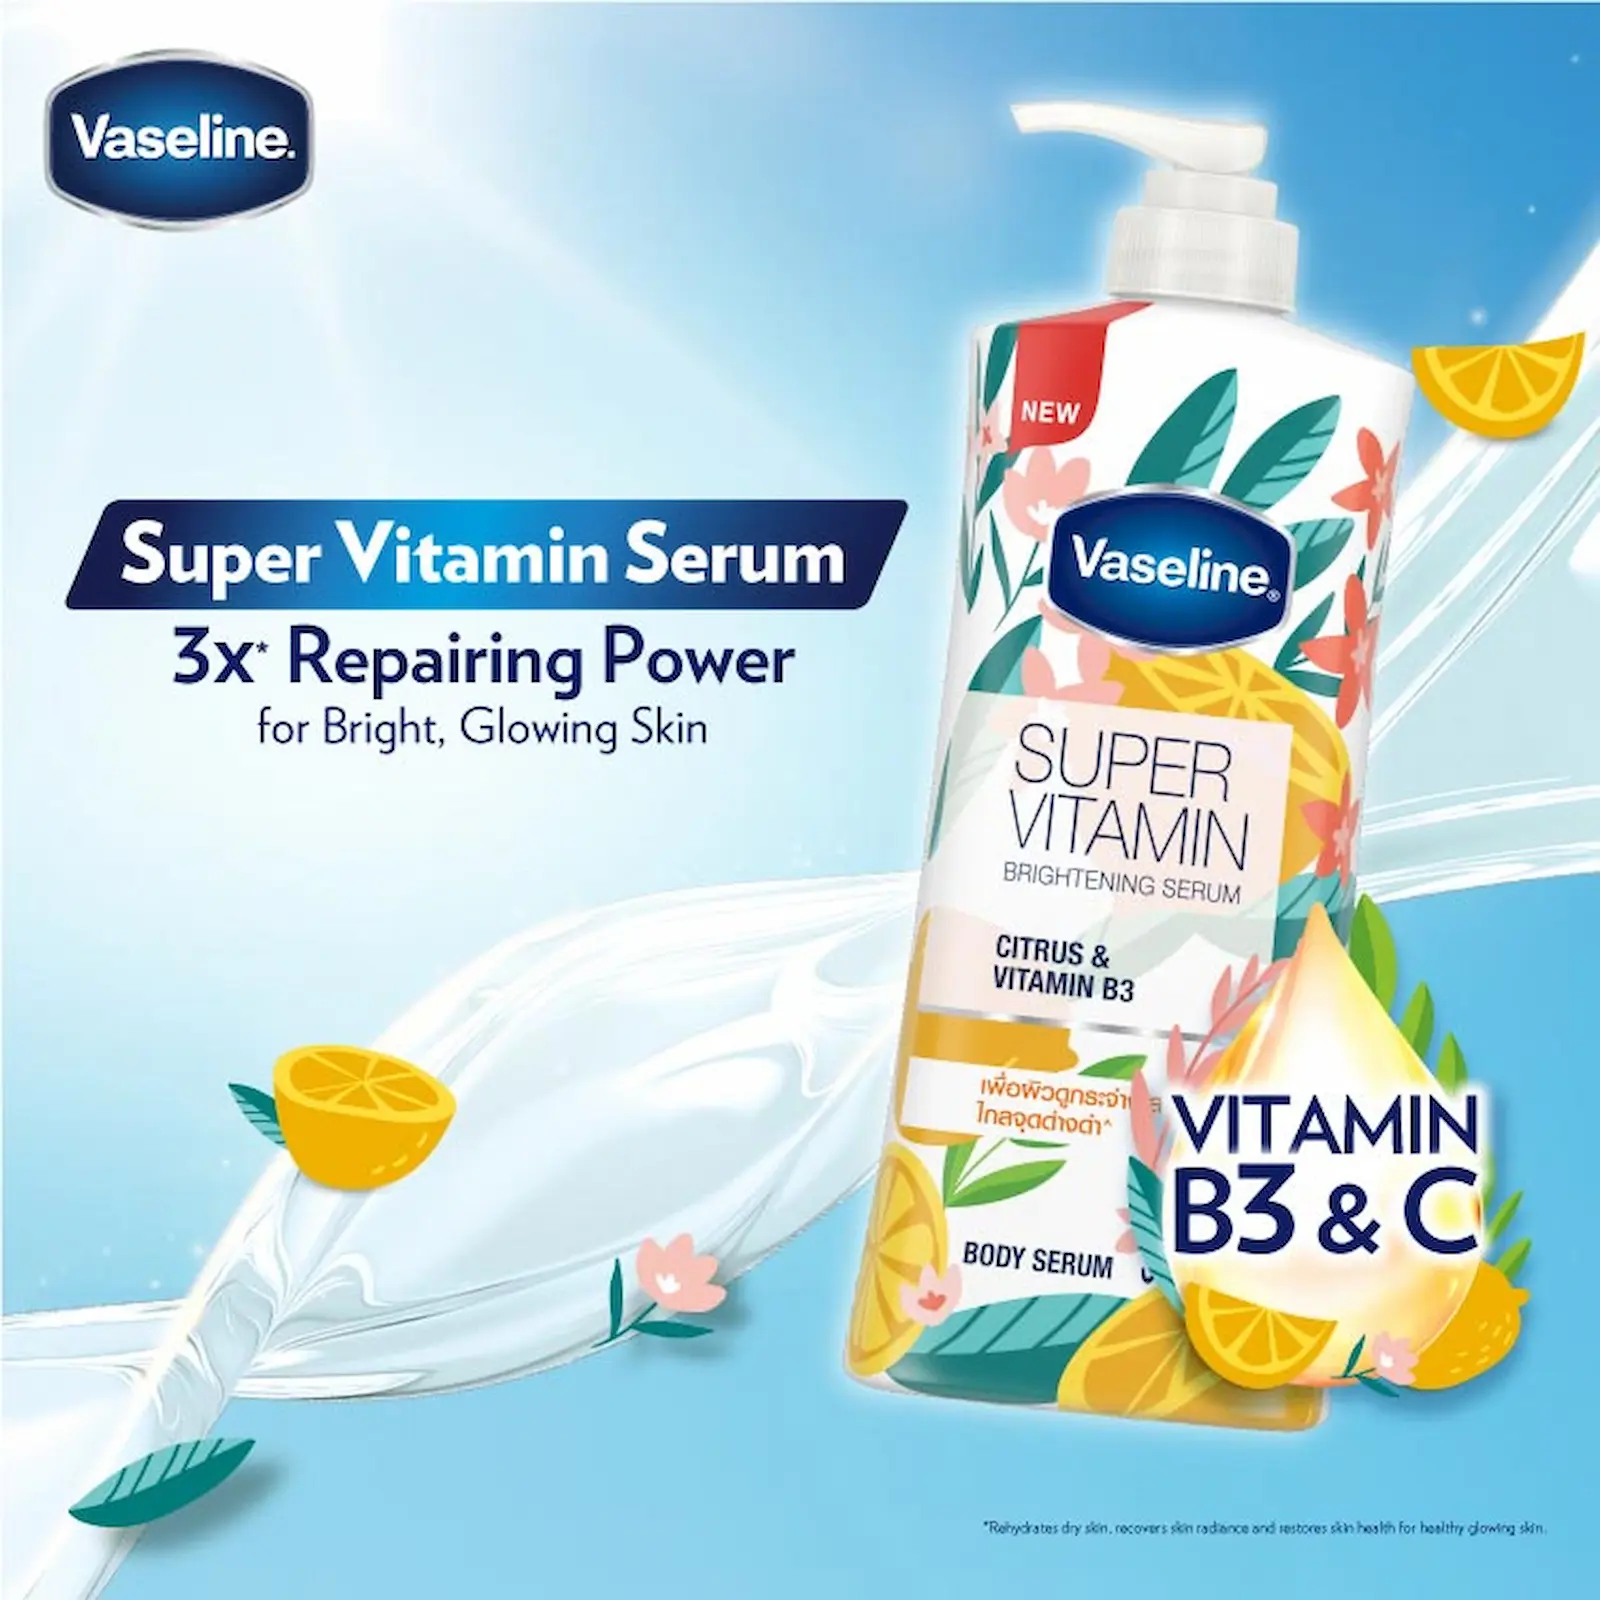 วาสลีน ซุปเปอร์ วิตามิน ไบรท์เทนนิ่ง เซรั่ม ( Vaseline  Super Vitamin Brightening Serum)